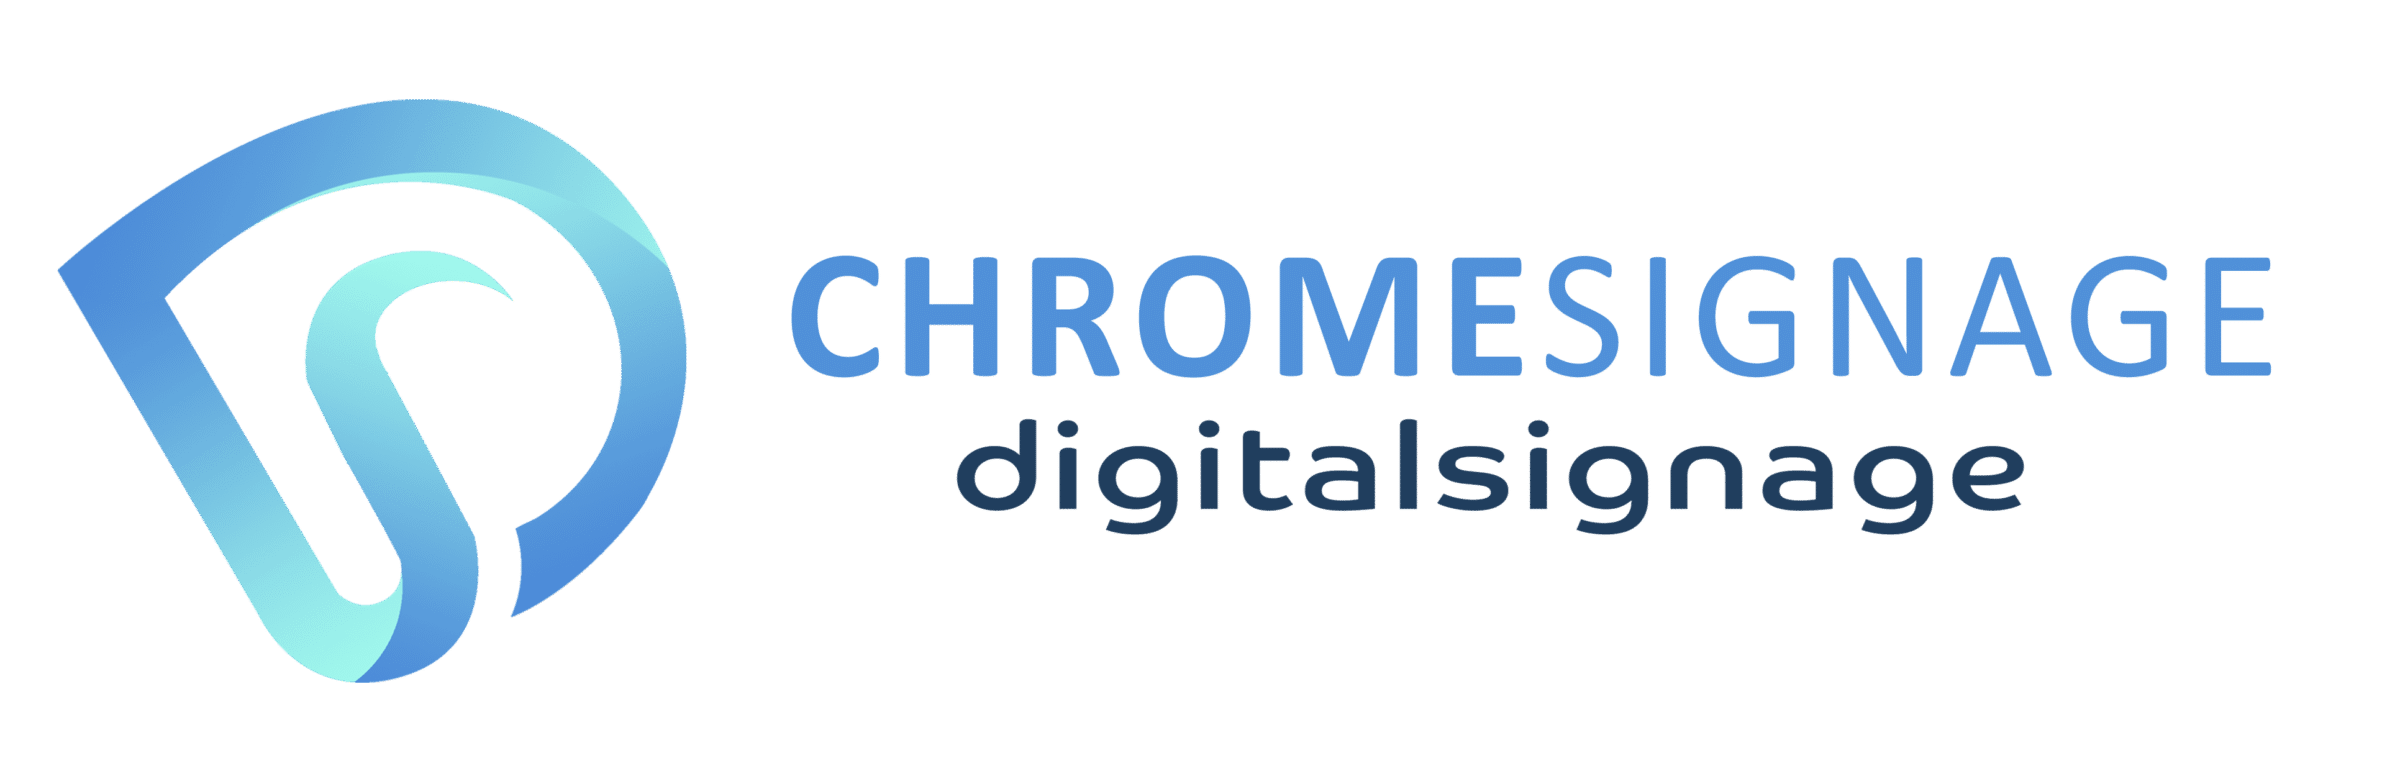 chrome-signage-logo